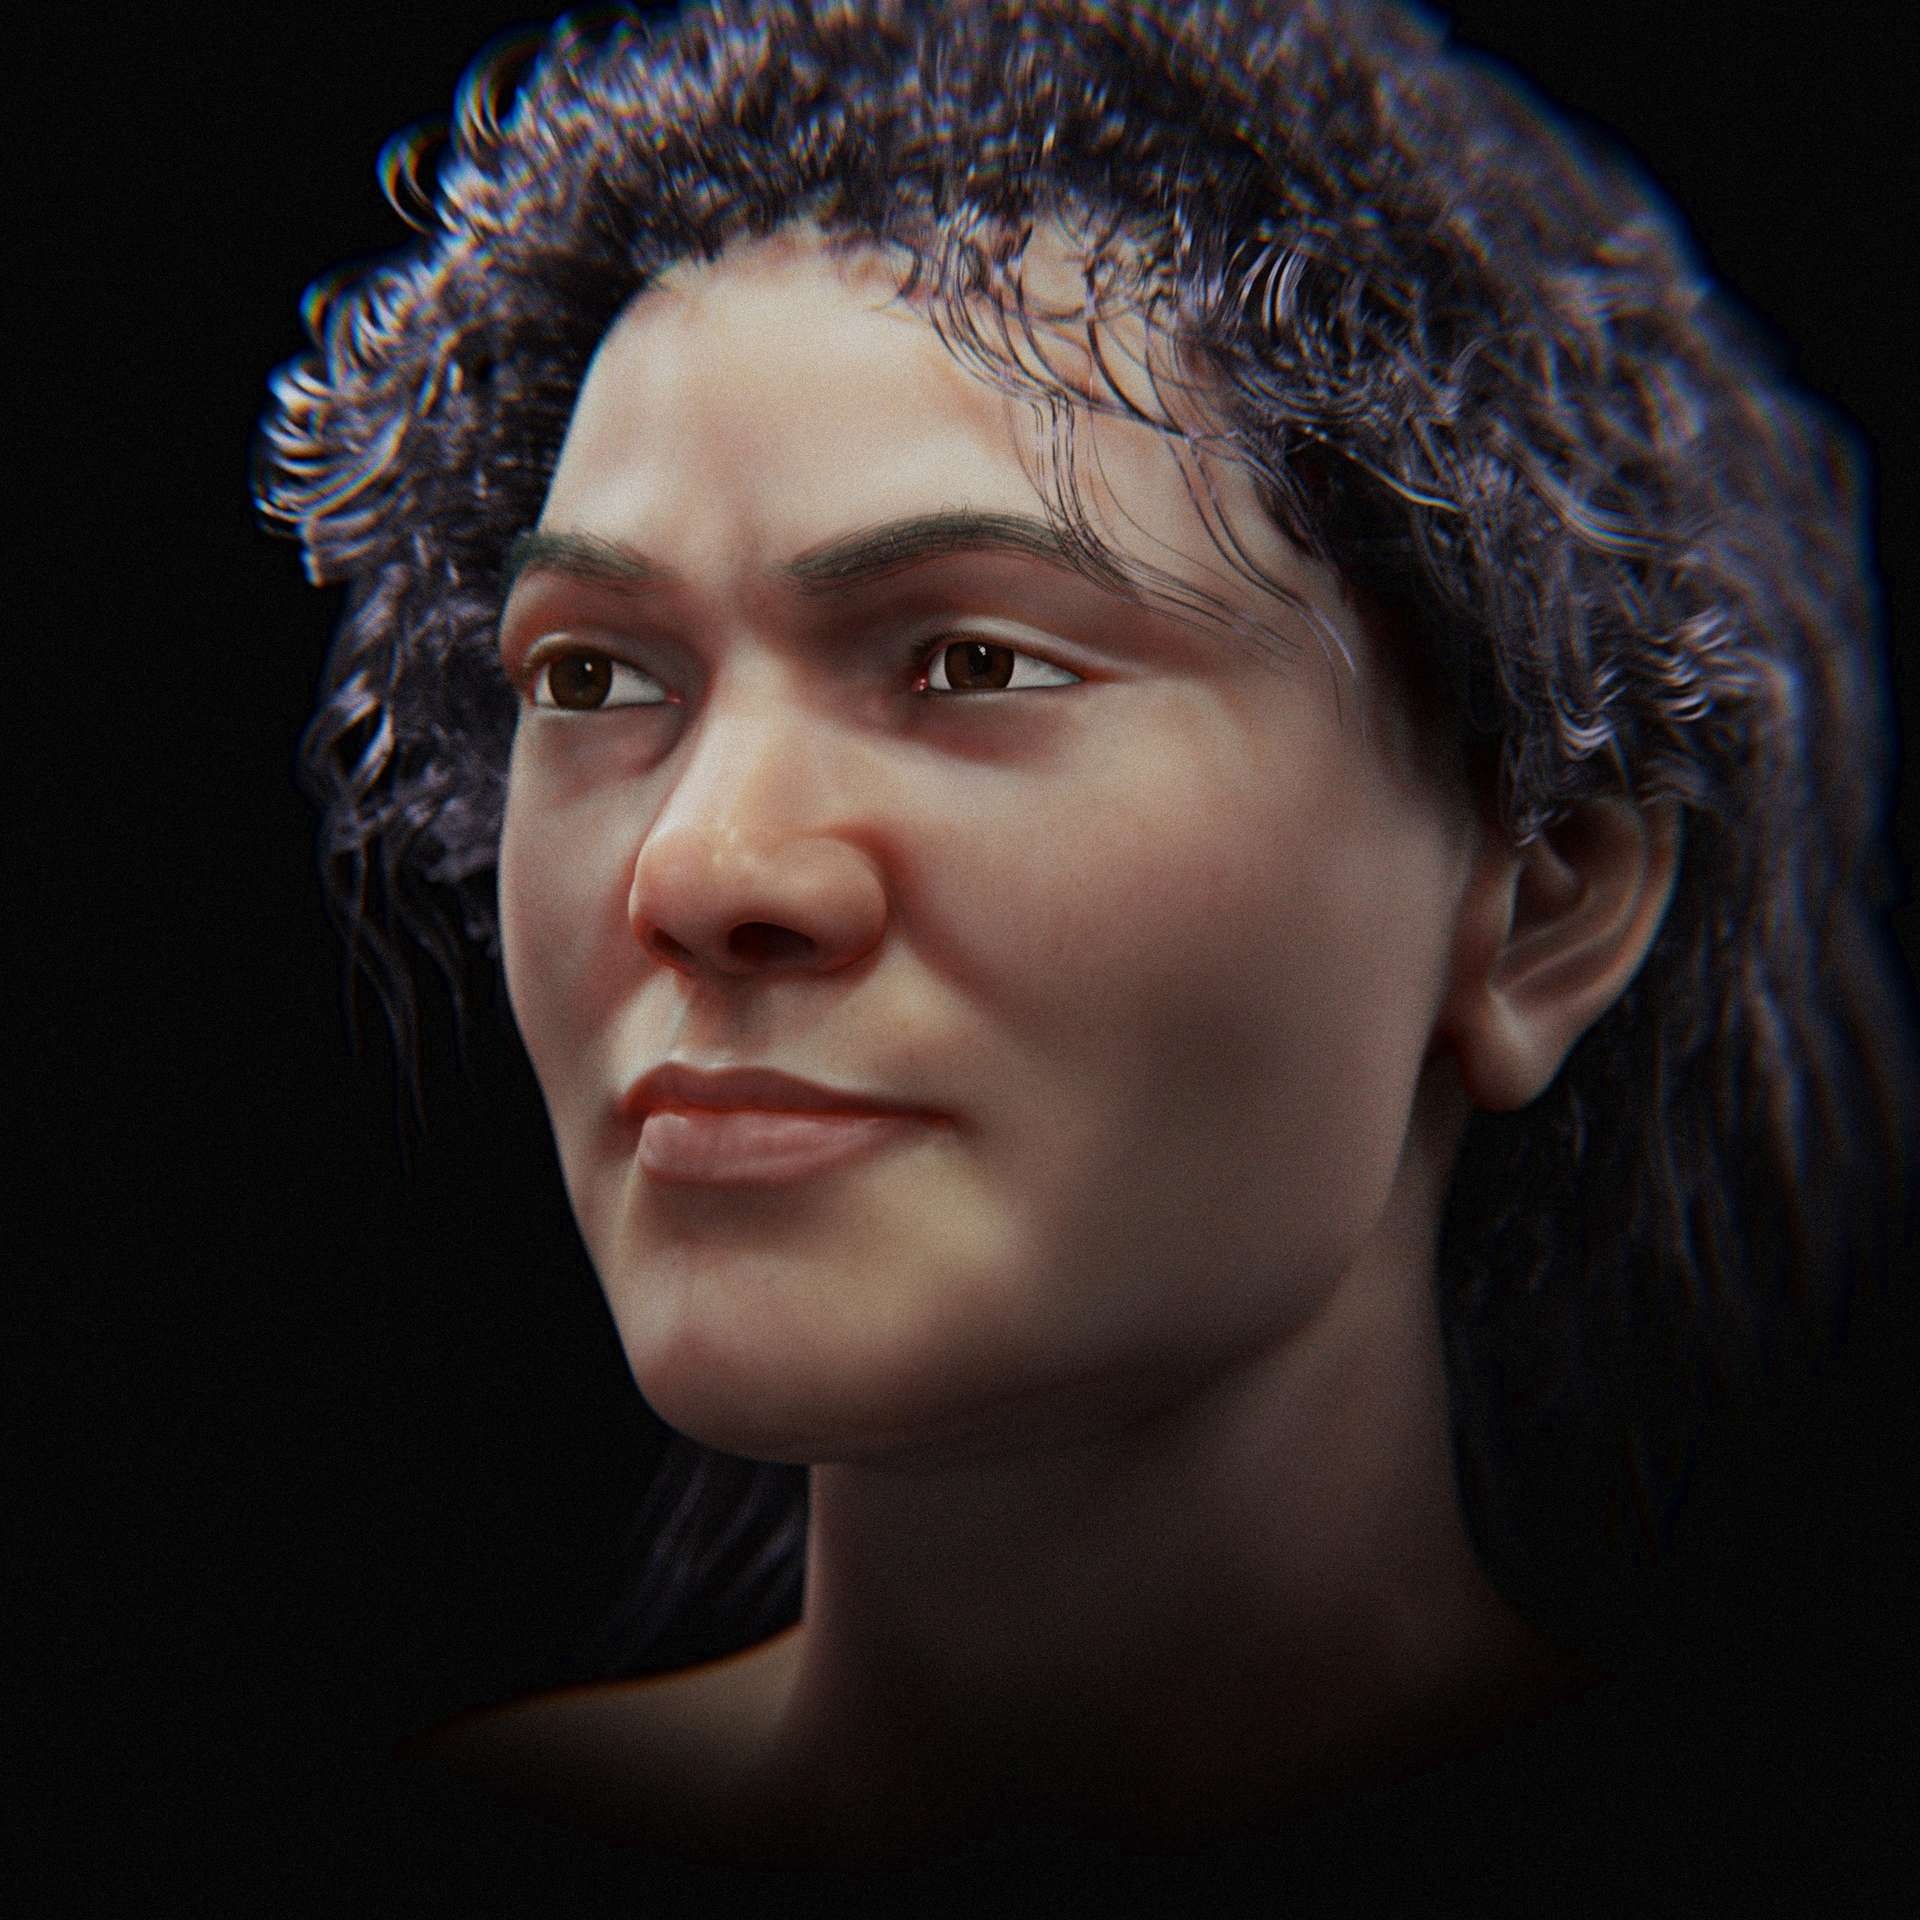 zlaty aber 1 trat - 43.000 Jahre alte Frau: Wissenschaftler rekonstruieren ihr Gesicht